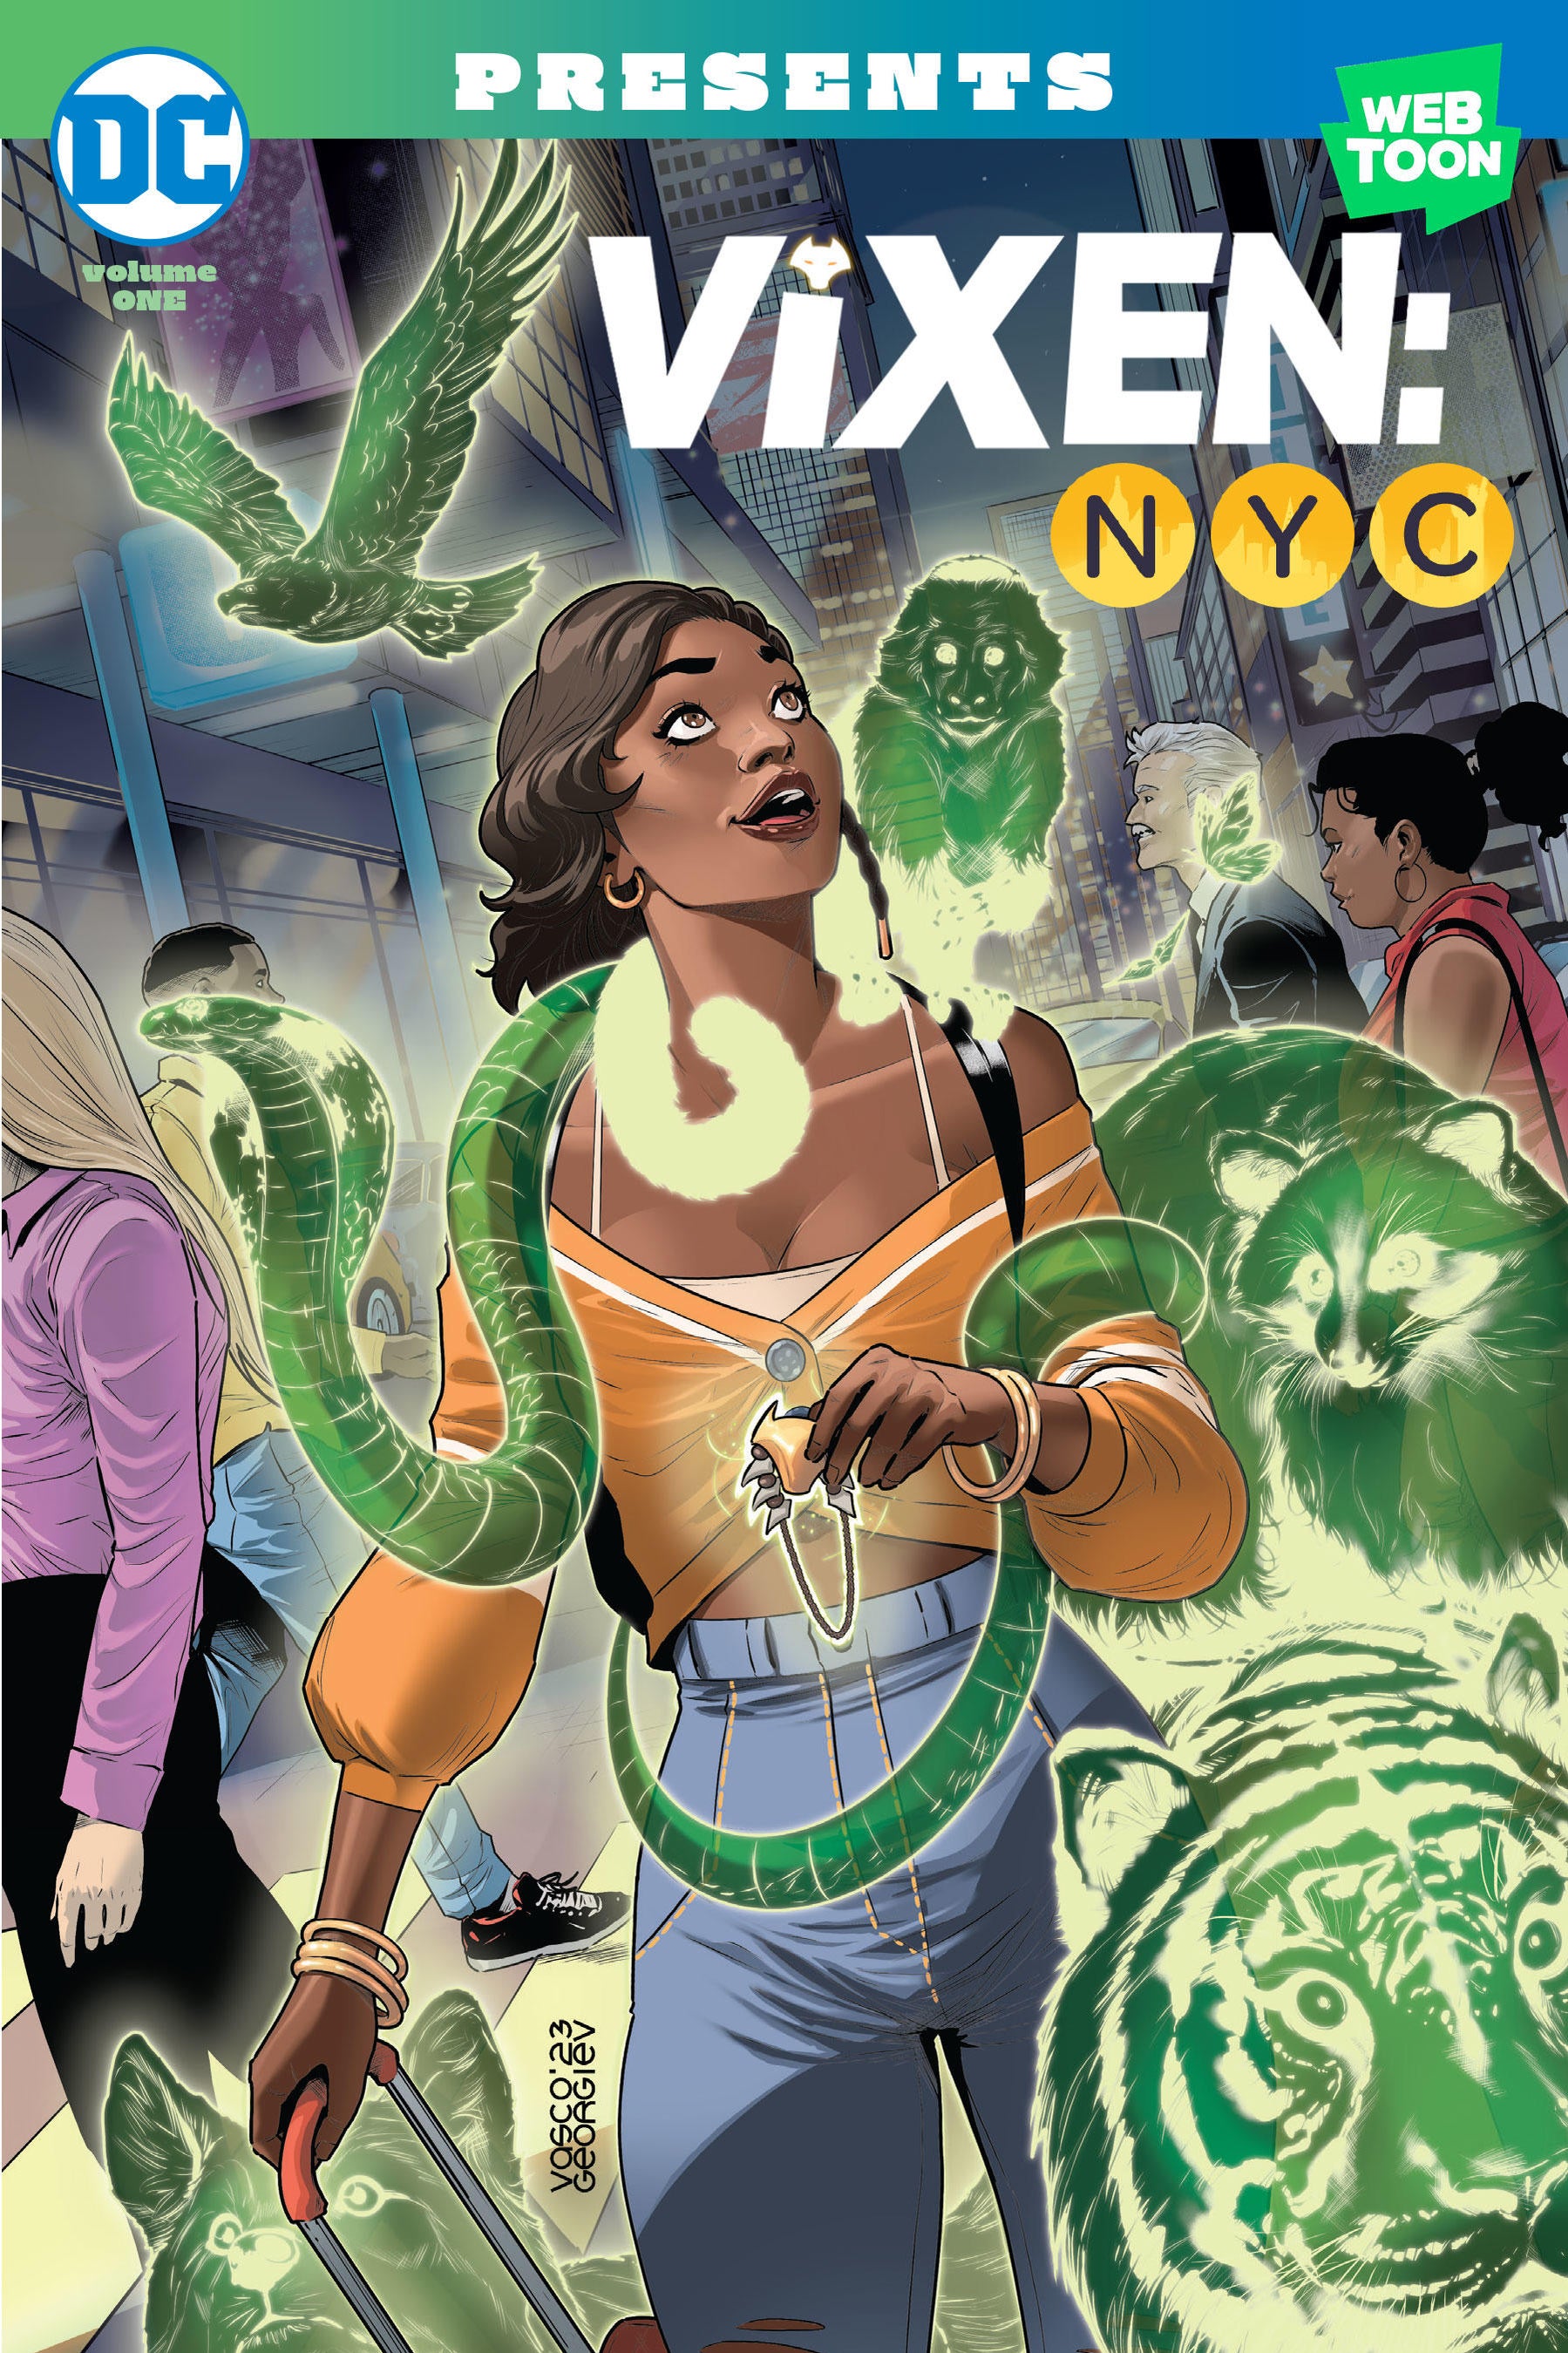 Wednesday, Aug. 30: DC Comics' Animated Adventure 'Vixen